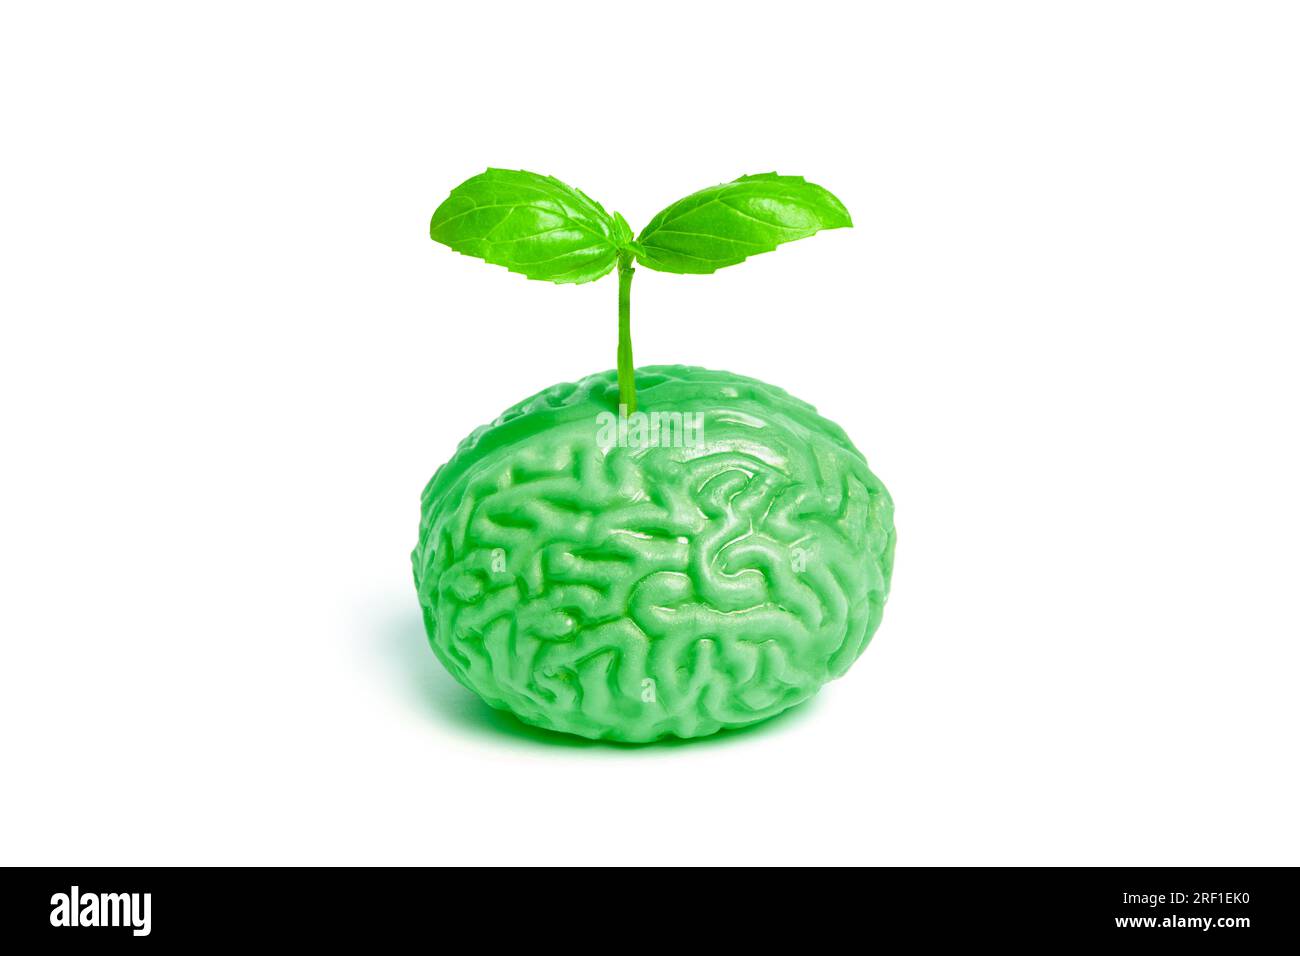 Il vibrante germoglio verde della pianta emerge da un modello anatomico del cervello umano. Rappresentazione simbolica del ringiovanimento e della vitalità Foto Stock